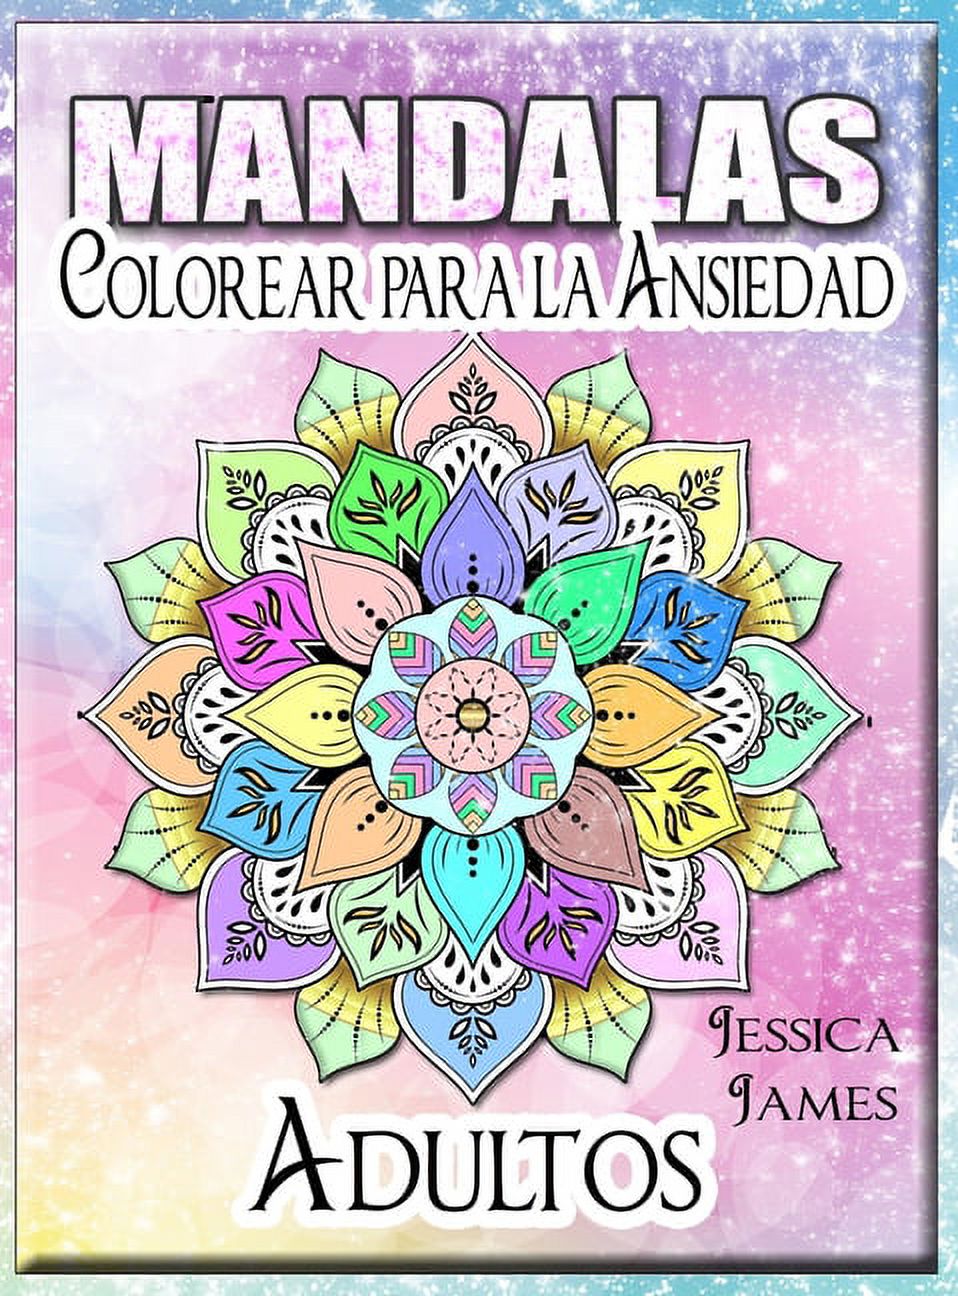 Mandalas Adultos Colorear para la Ansiedad: Libro para Colorear de Mandalas  - Libro para Colorear de Relajación y Alivio del Estrés para Adultos - Libro  para Colorear de Mandalas para Mujeres 